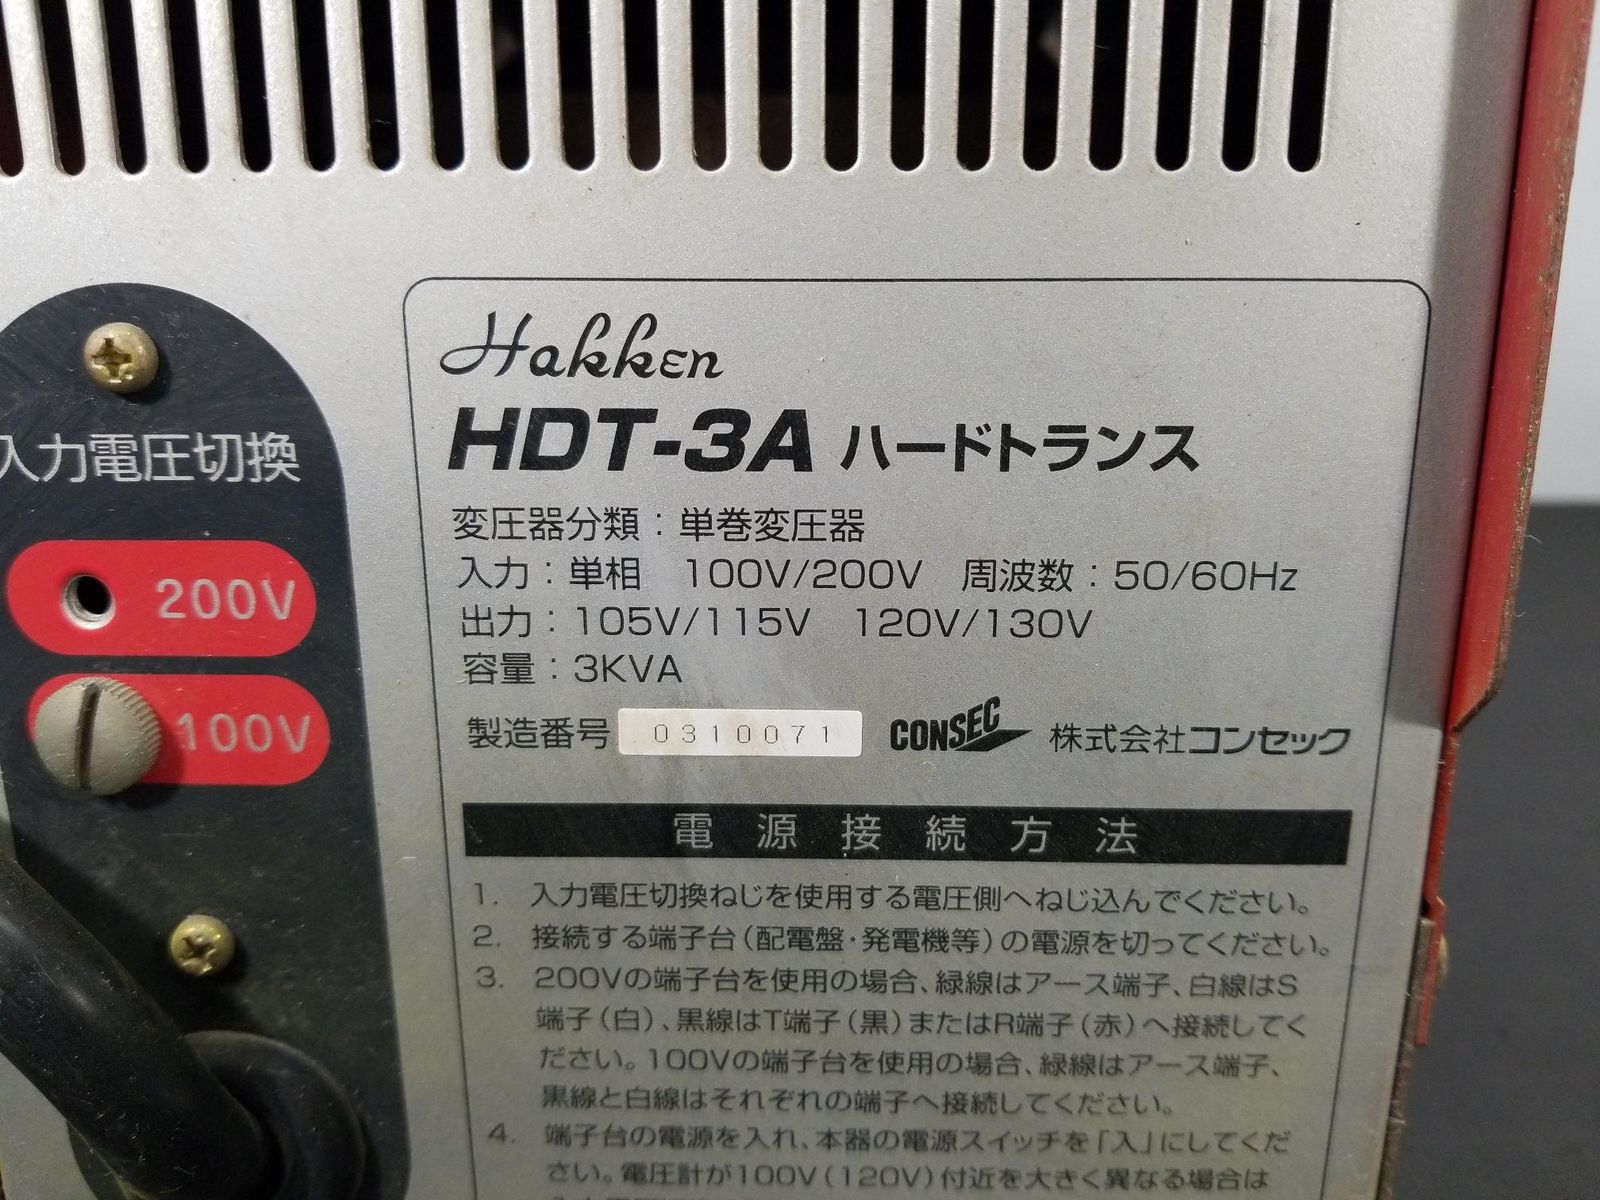 昇降圧兼用トランス 変圧器 HDT-3A ハッケン コンセック A4961G12 